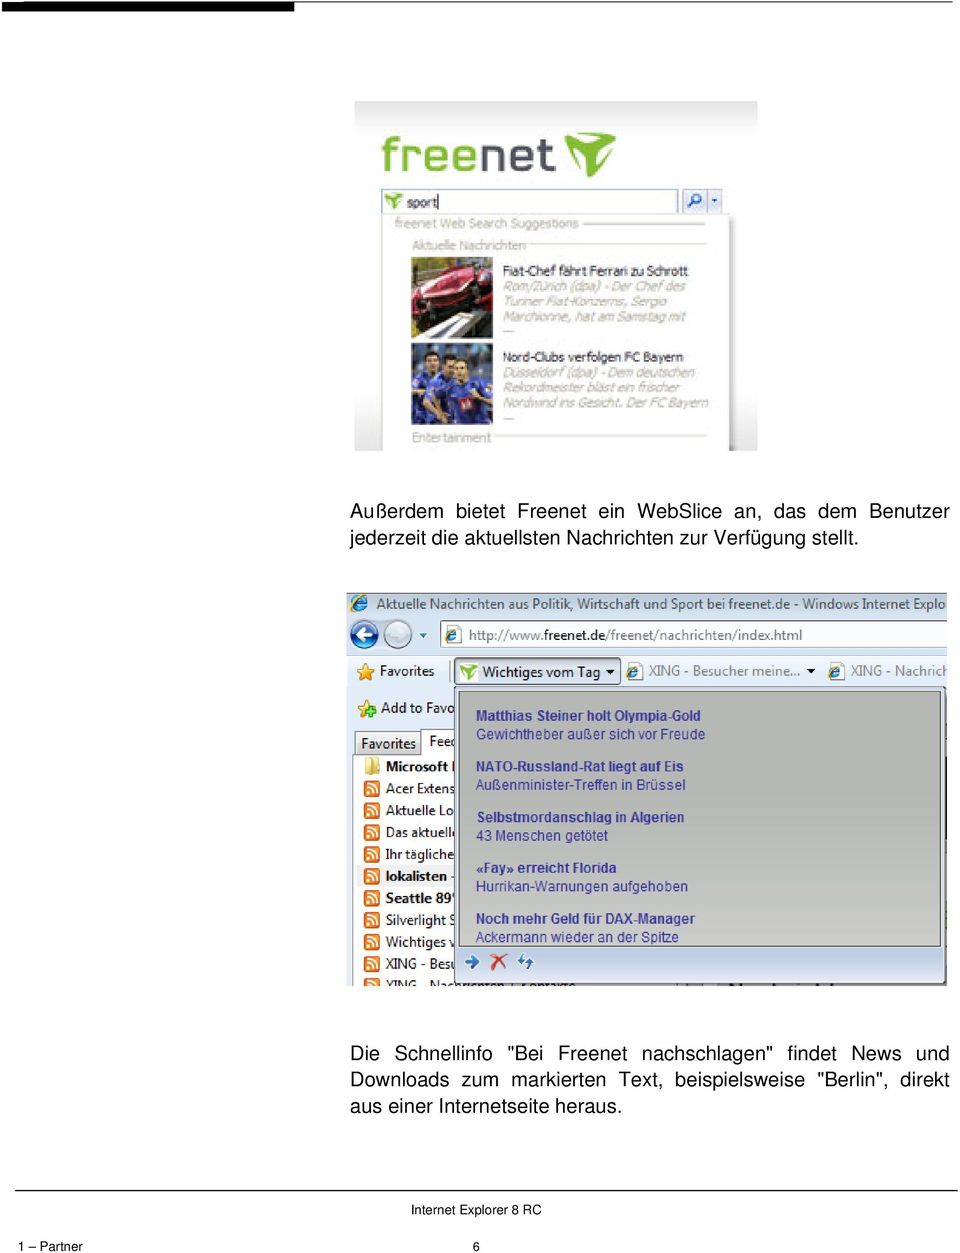 Die Schnellinfo "Bei Freenet nachschlagen" findet News und Downloads